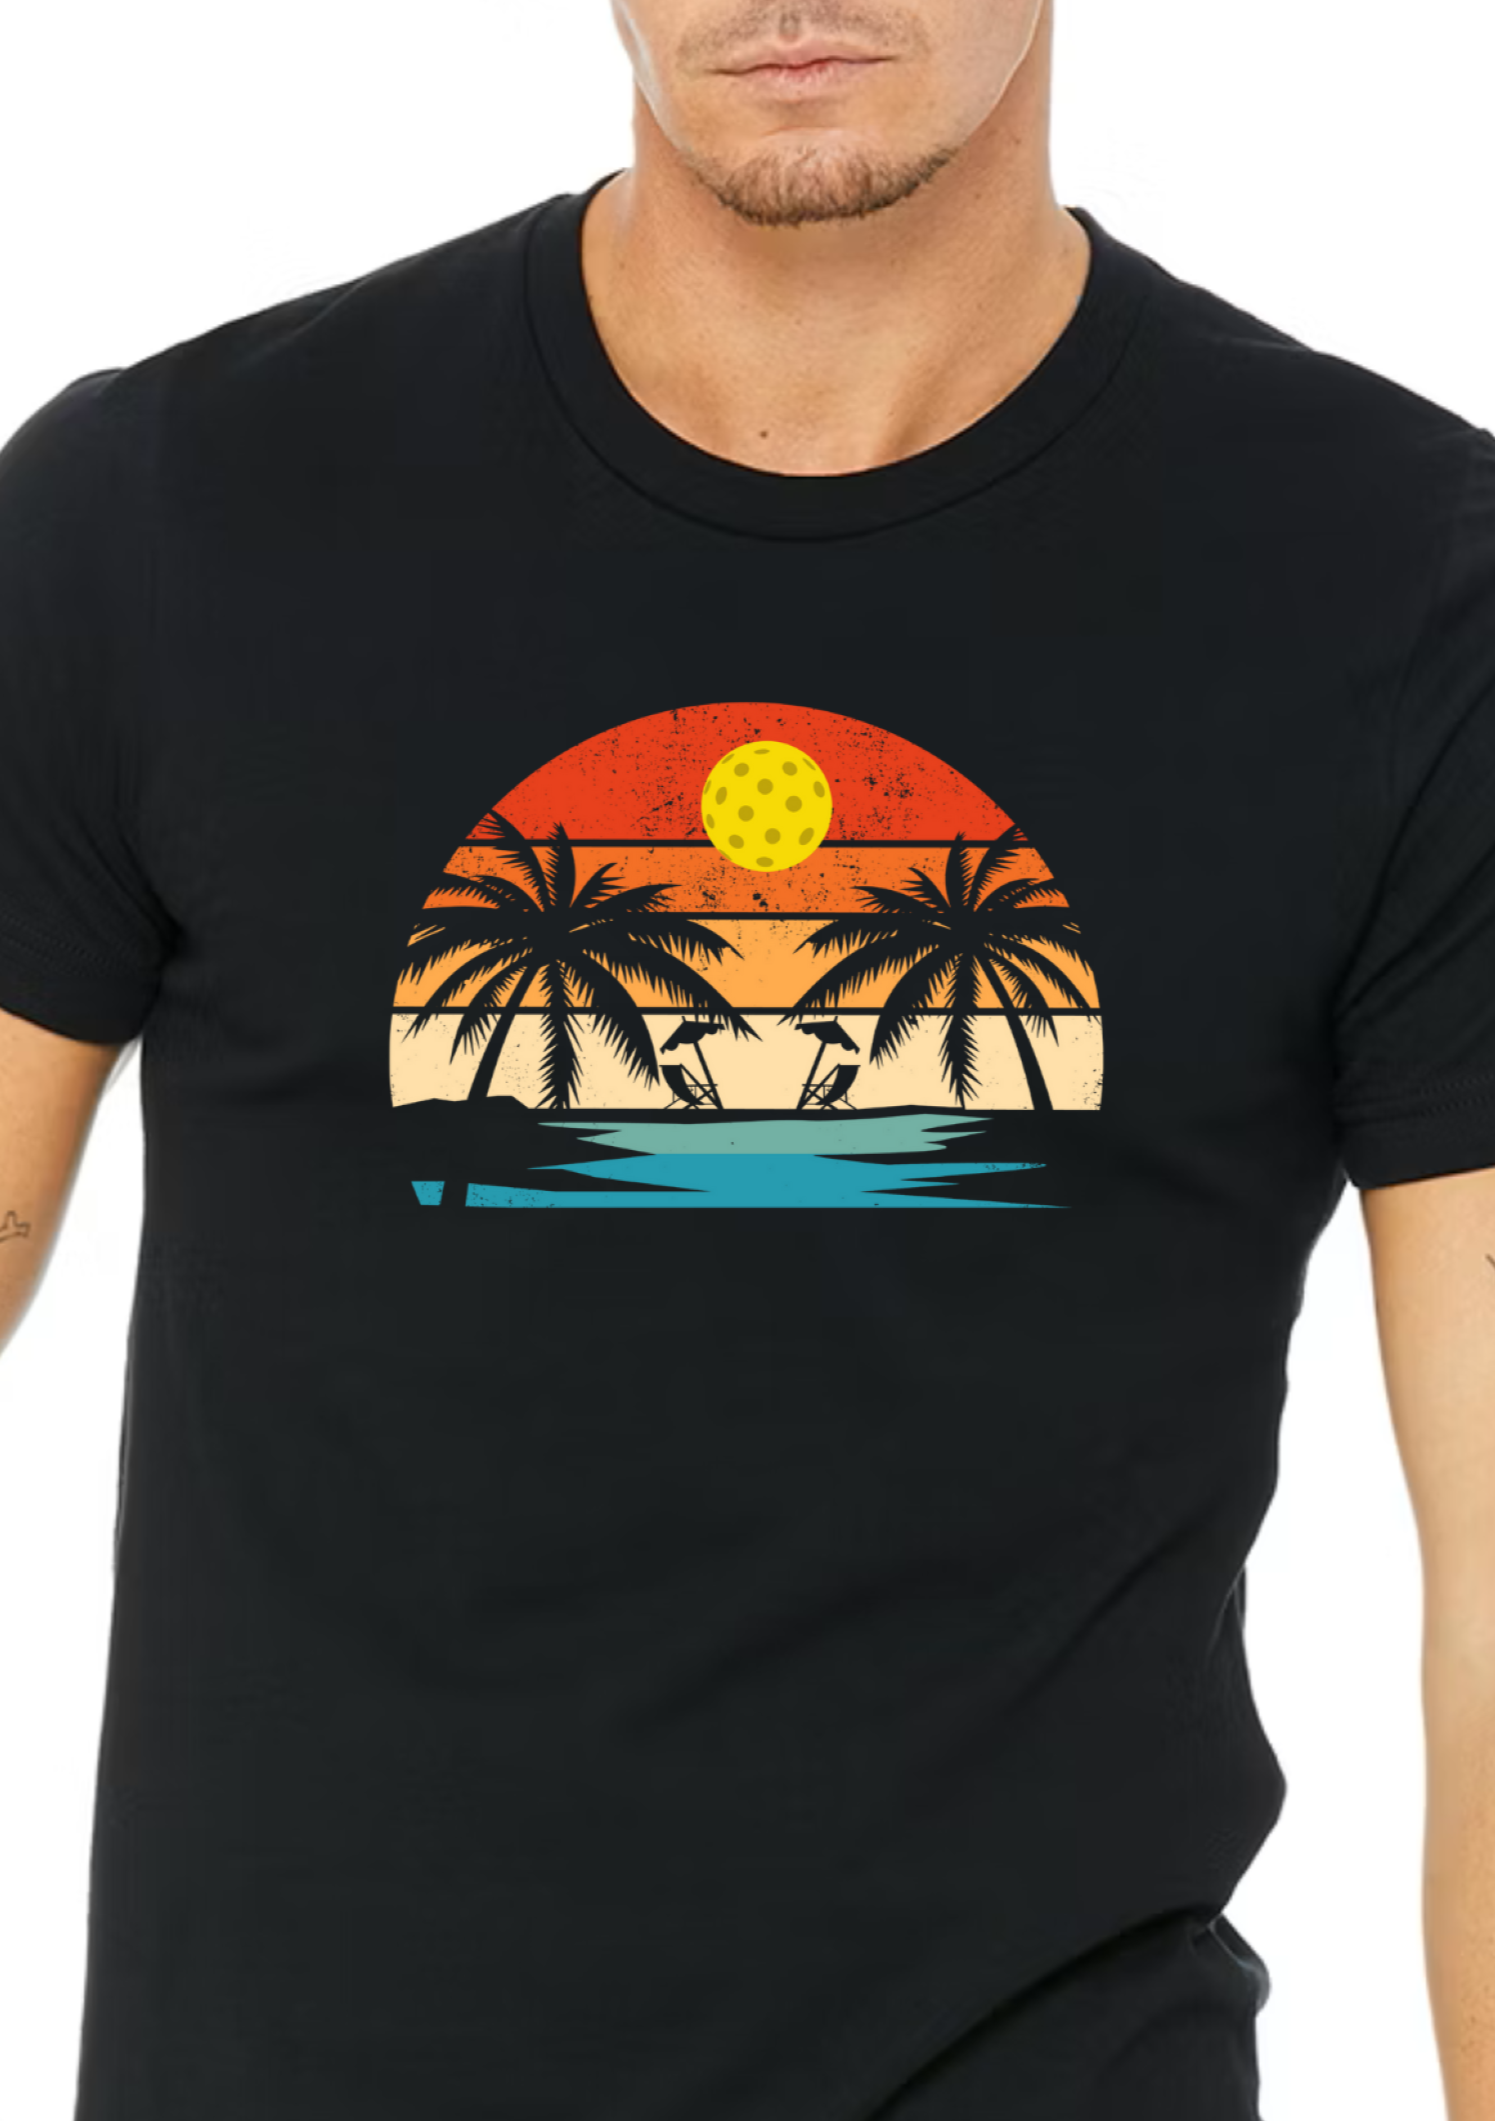 Absolutely gorgeously designed pickleball sunset artwork t-shirt for men or women. 